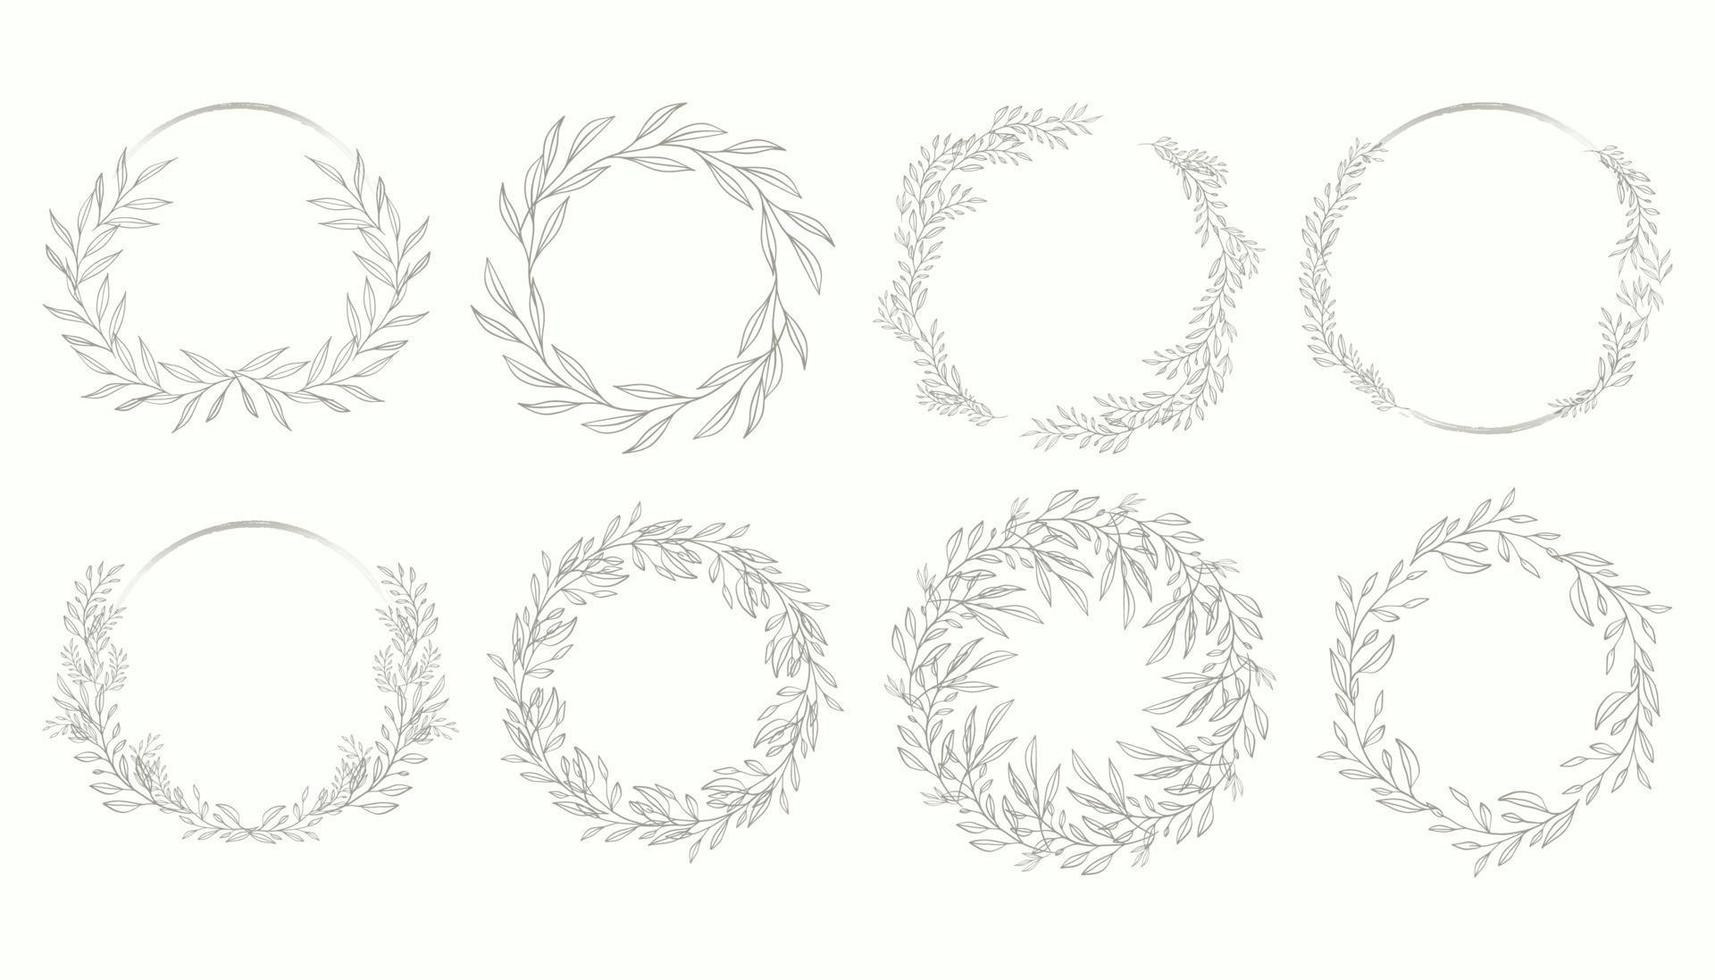 Hochzeit Blumenrand Vektor-Set. Illustration von runden Blumenrahmen vektor